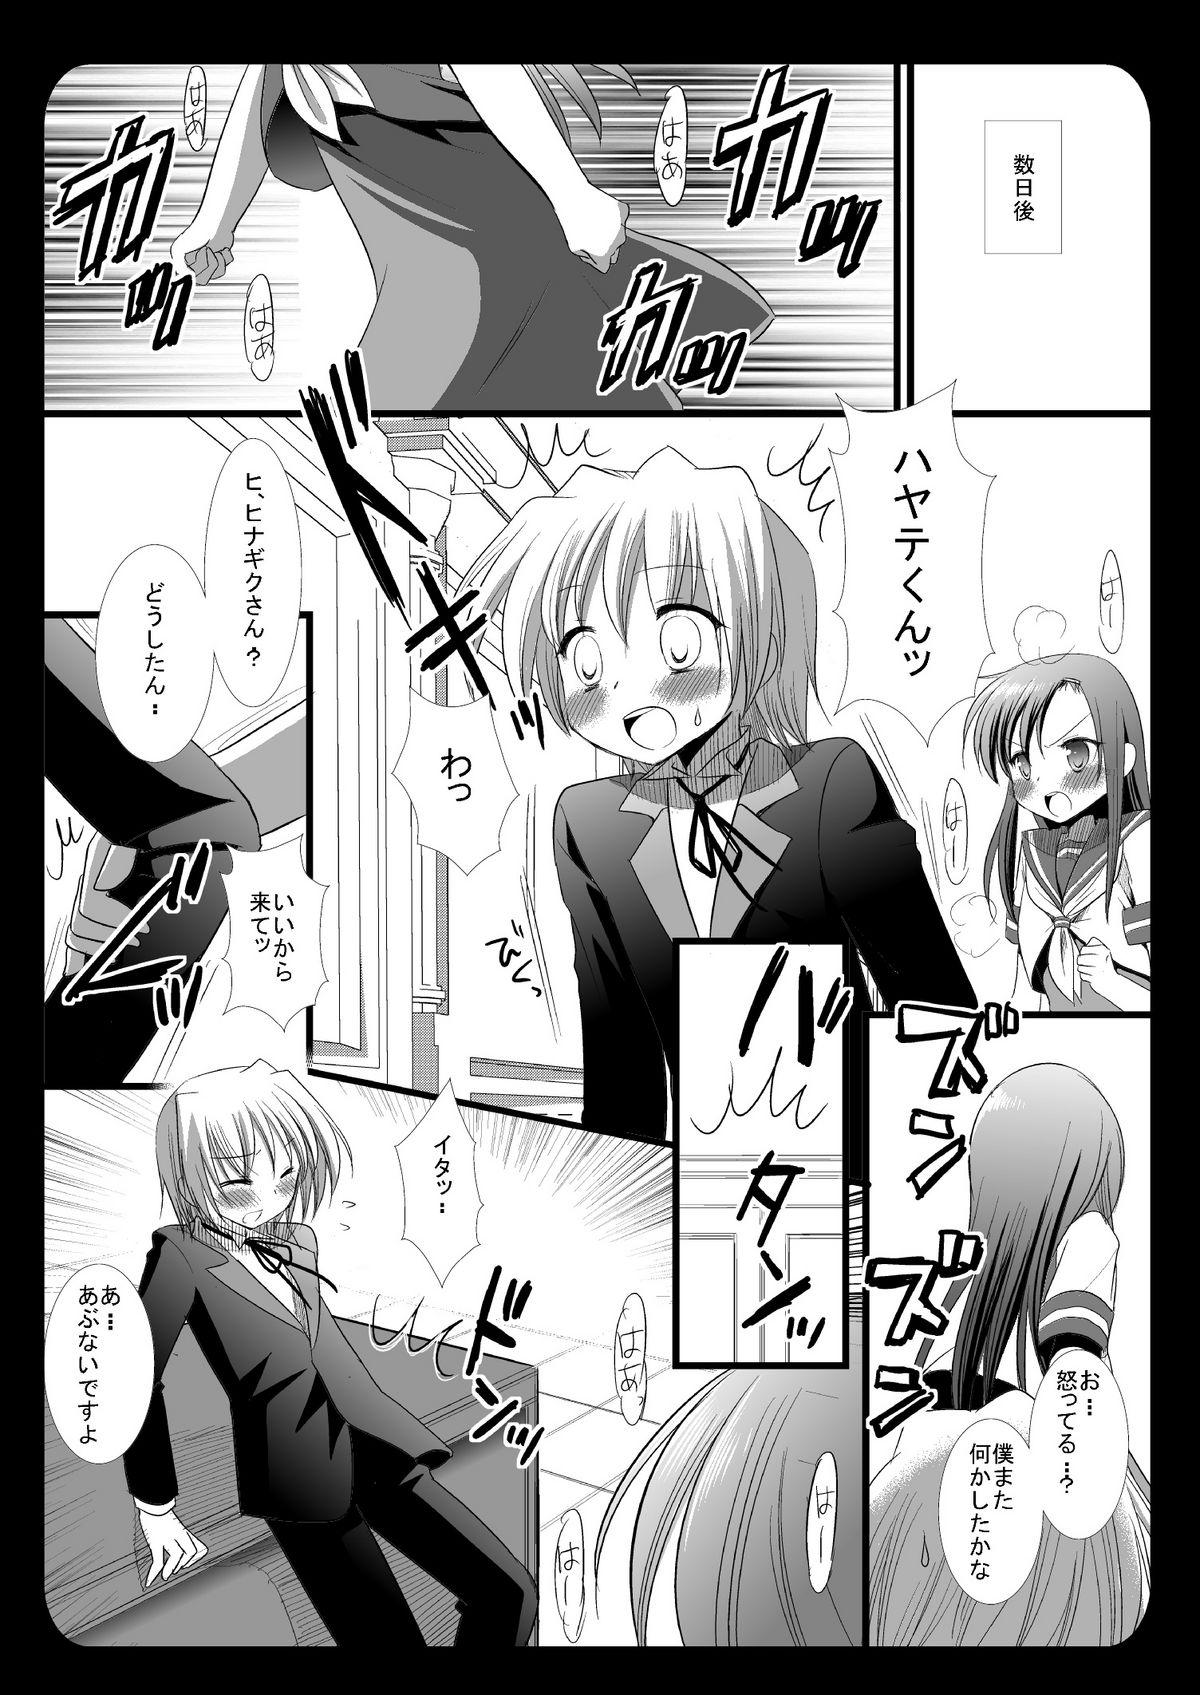 Gaydudes Hinagiku no Himitsu 4 - Hayate no gotoku Petite Teenager - Page 7